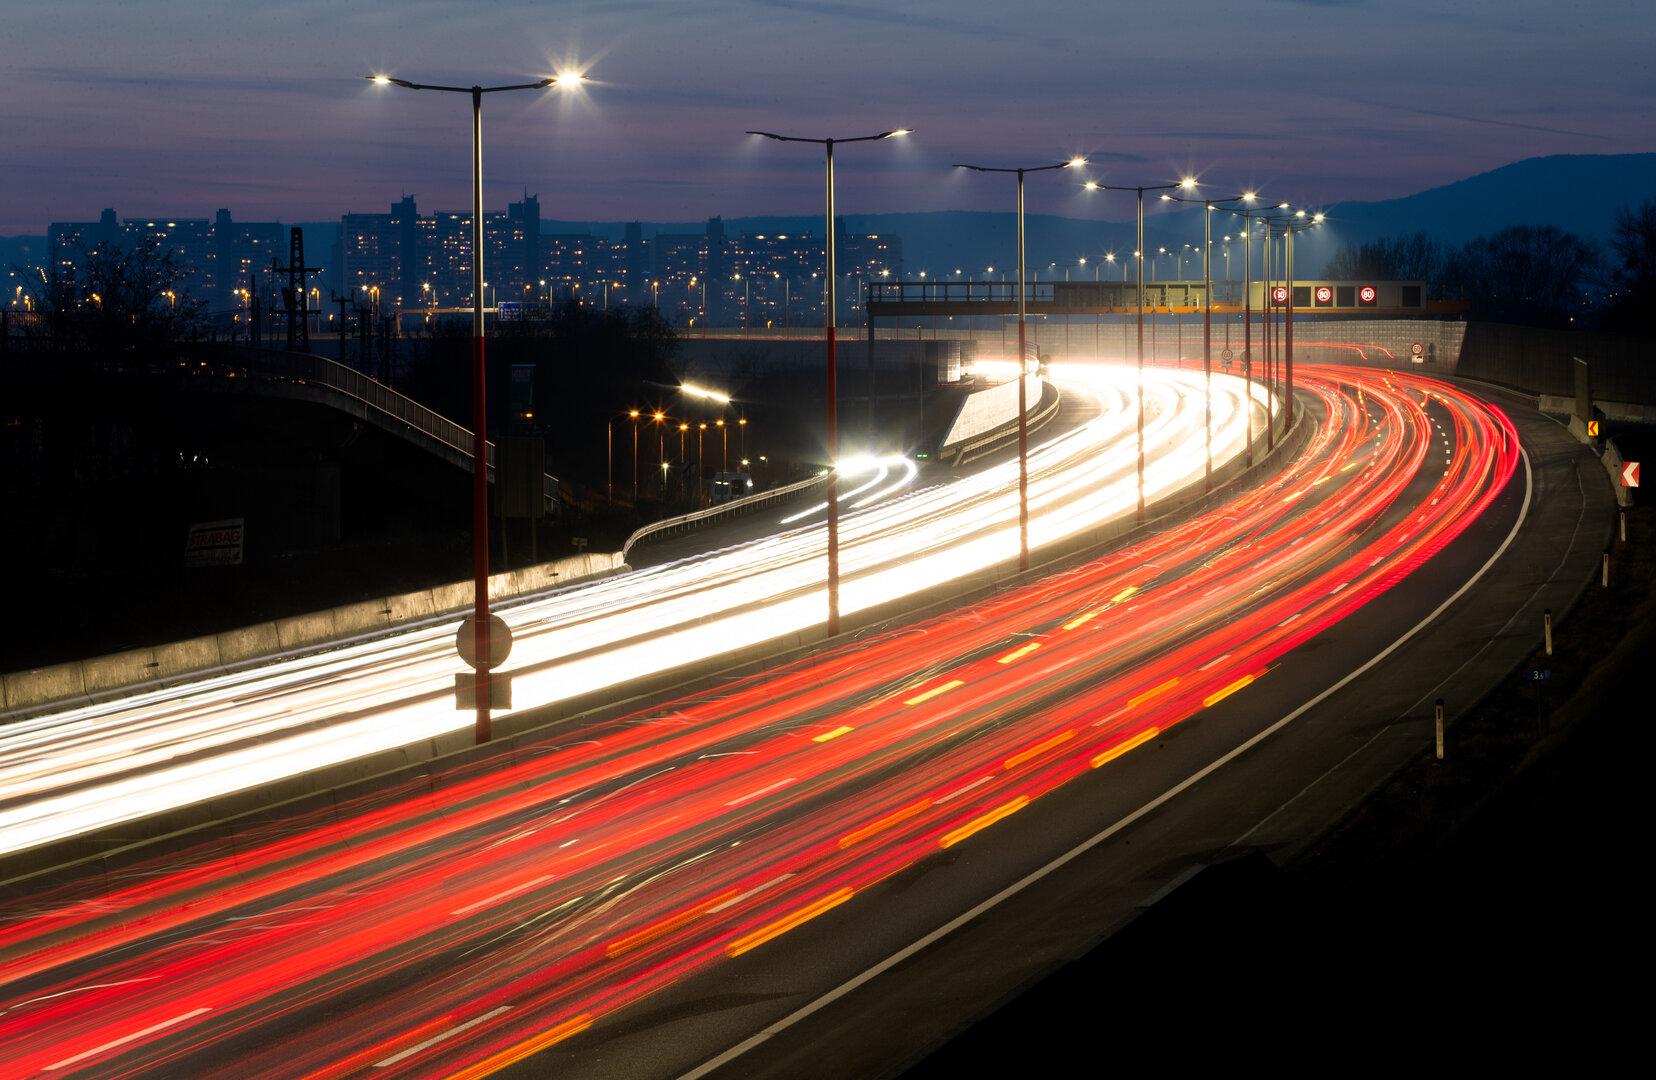 90 km/h zu schnell: auto dürfte beschlagnahmt werden